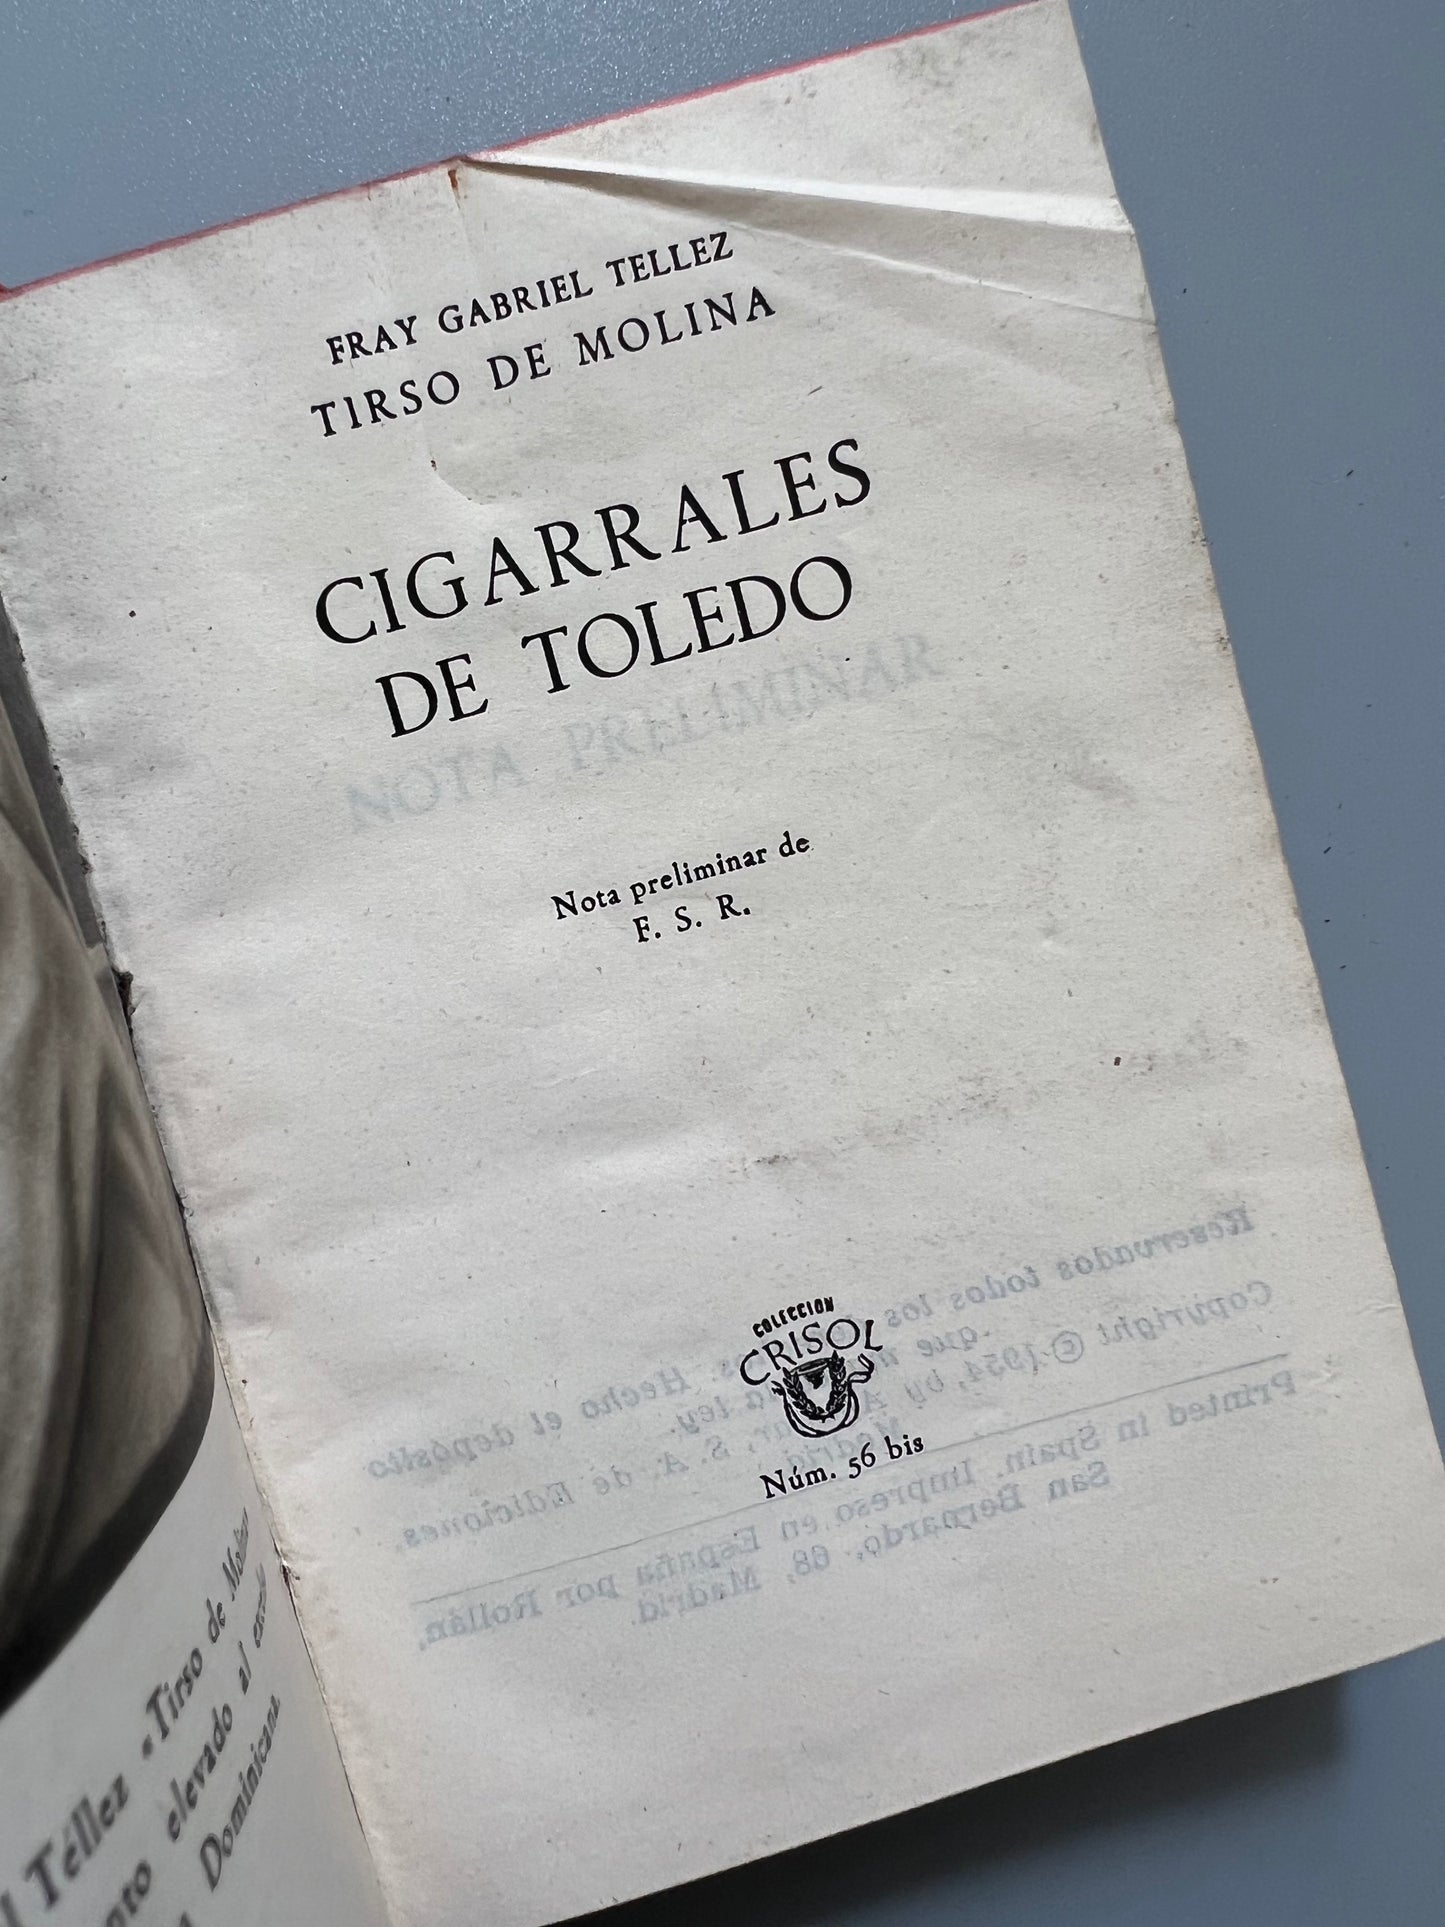 Los cigarrales de Toledo, Tirso de Molina - Colección Crisol nº54, 1954